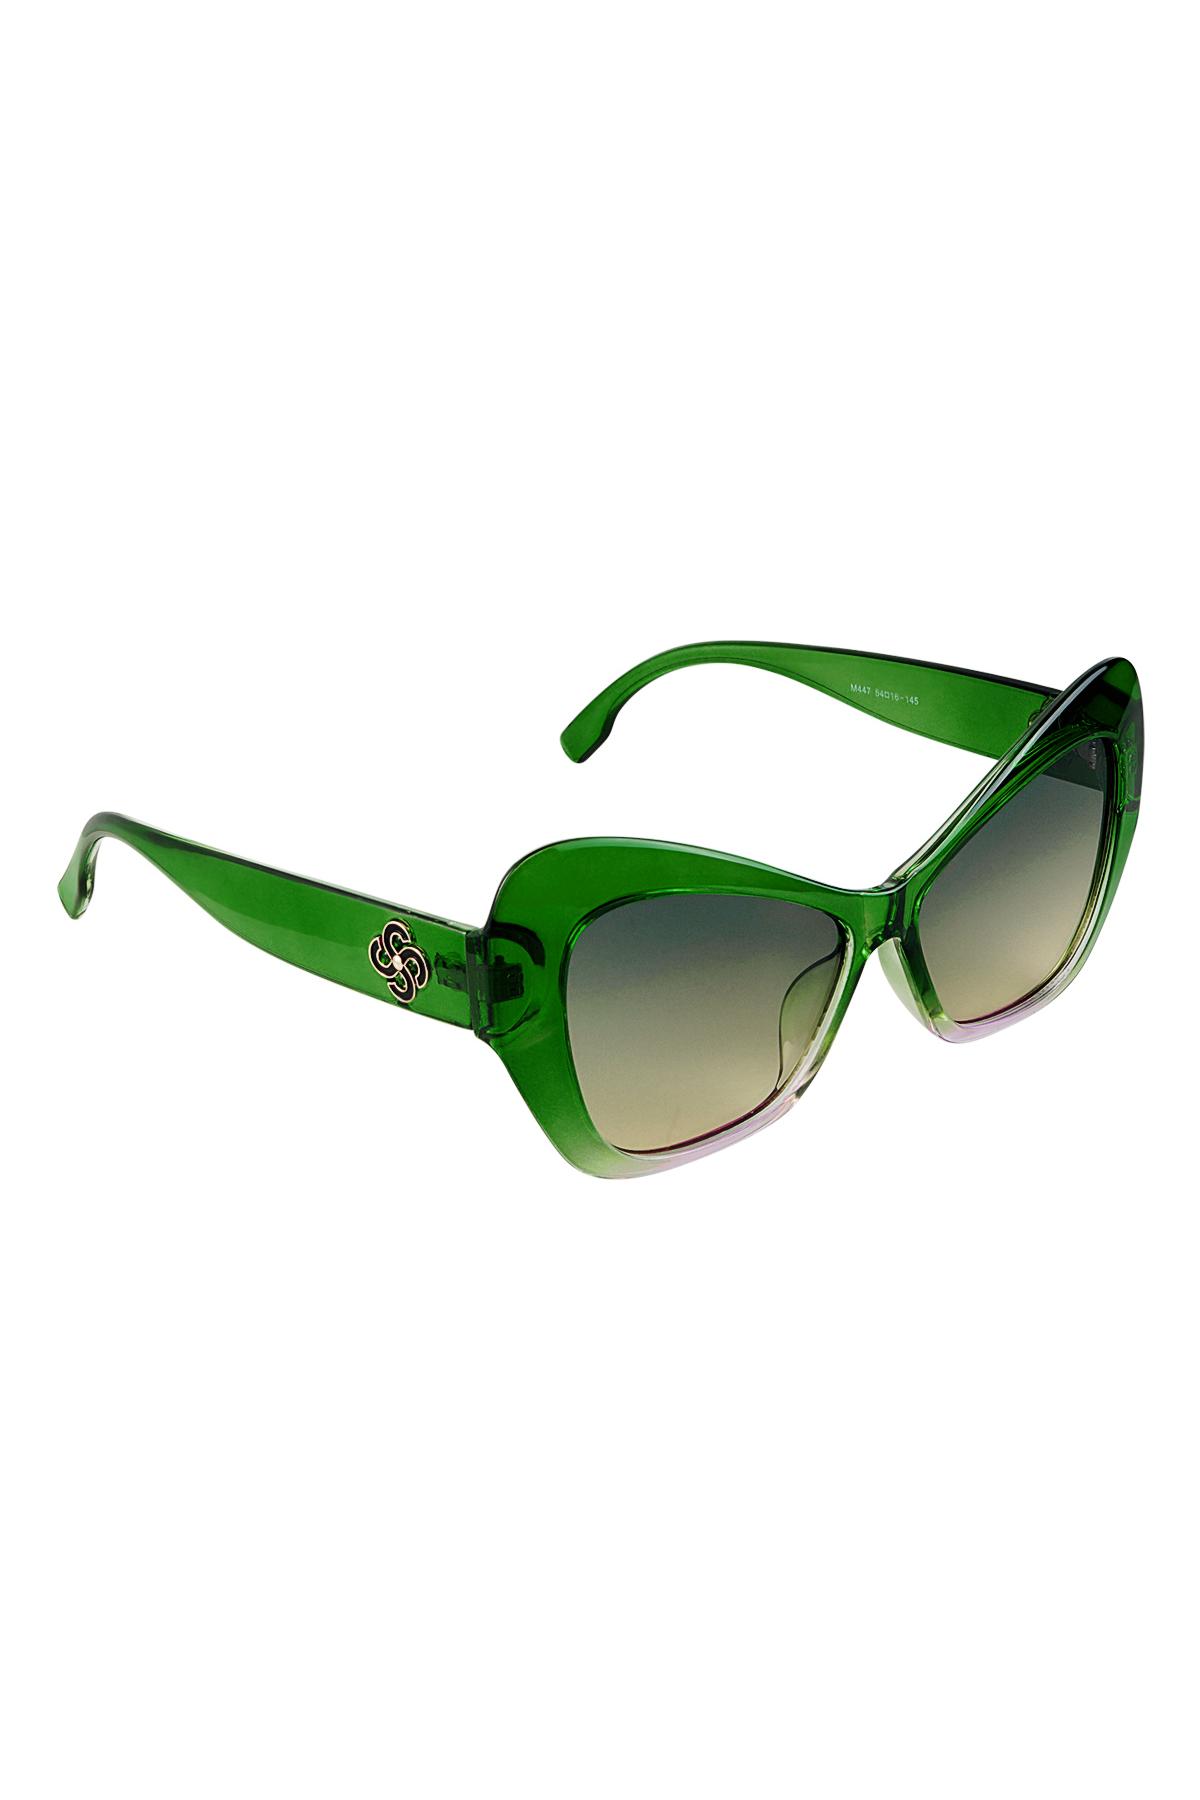 Dichiarazione sugli occhiali da sole Green PC One size